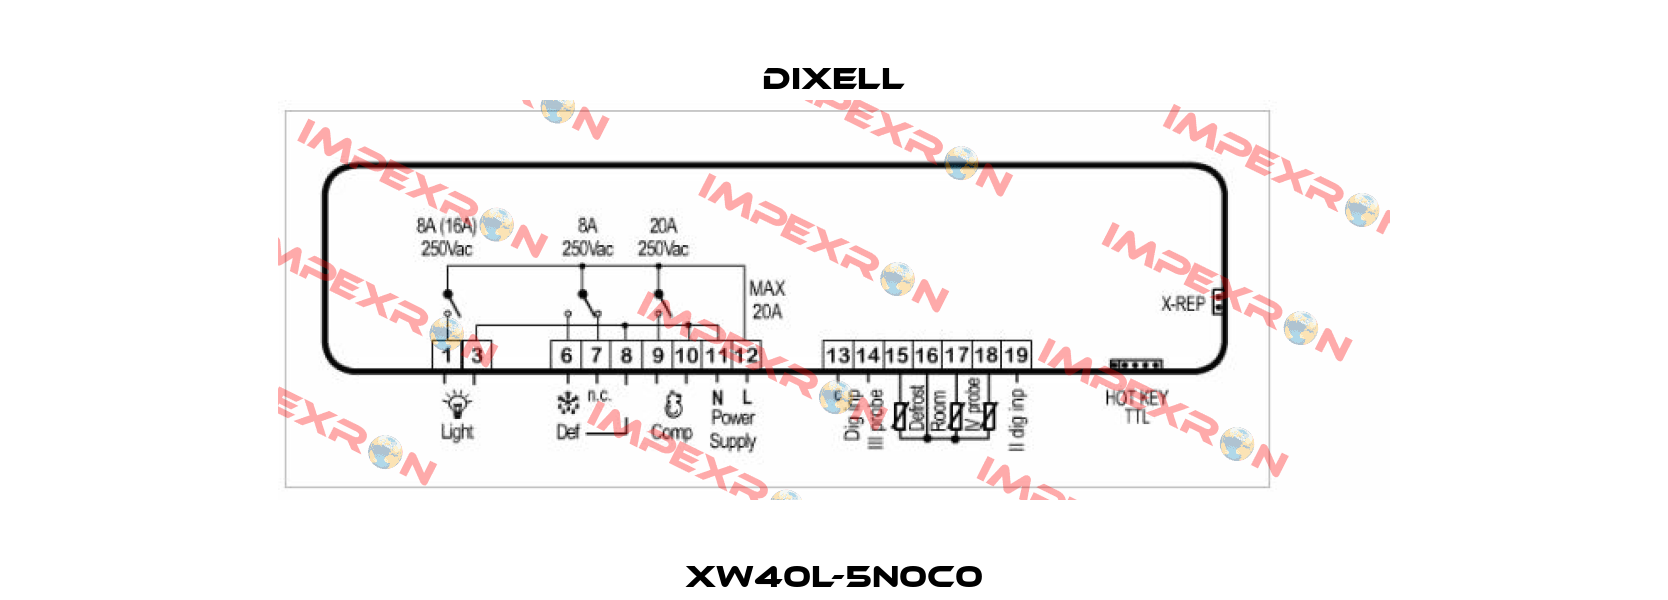 XW40L-5N0C0 Dixell